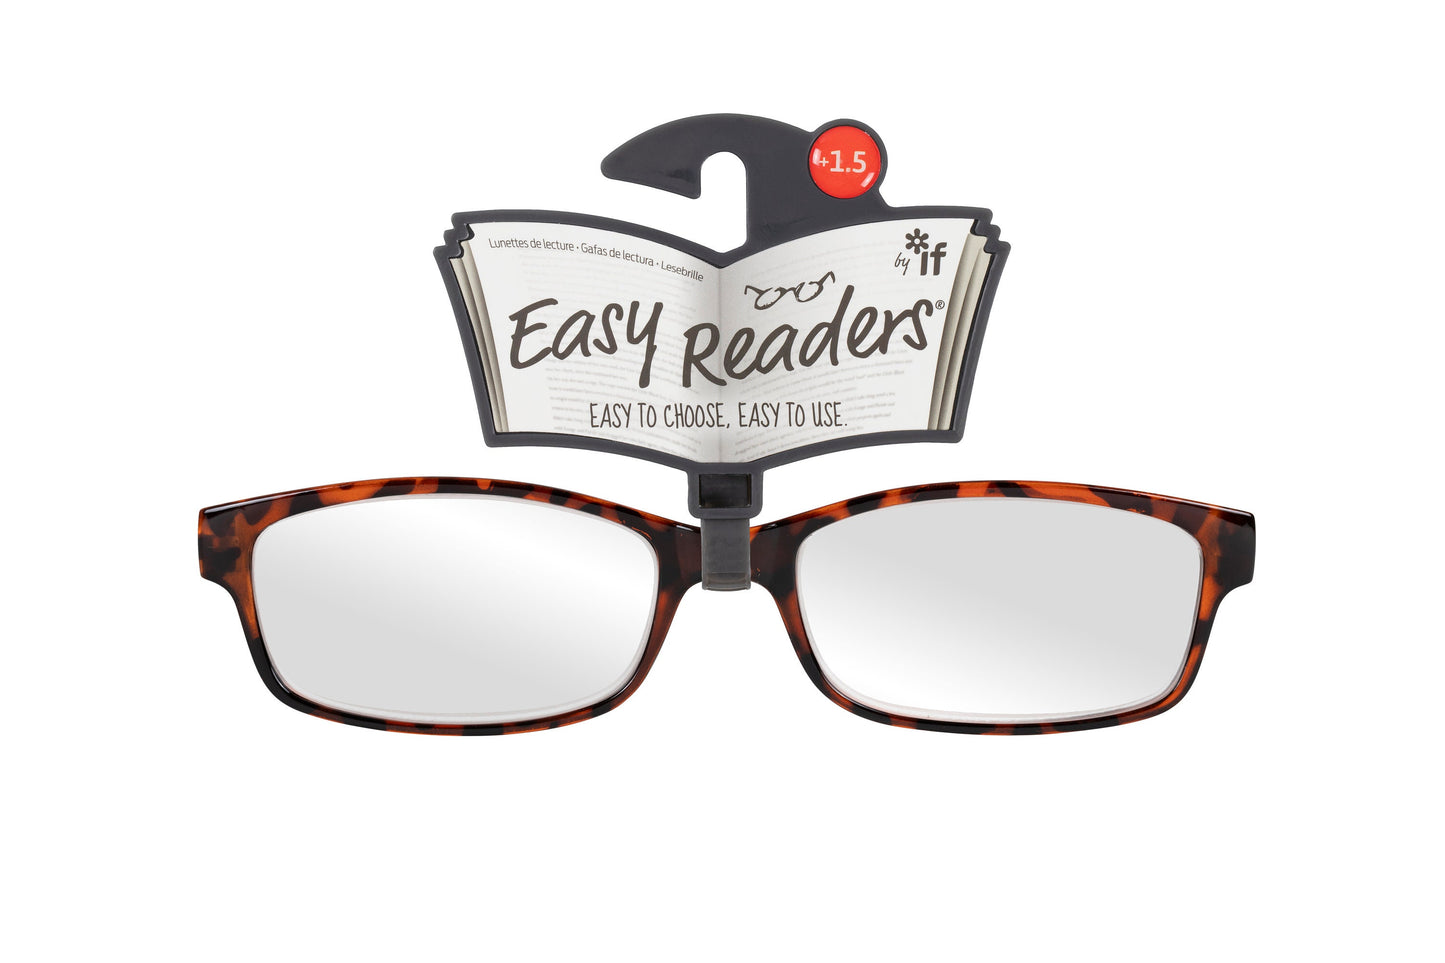 Easy Readers Reading Glasses - Classic Tortoiseshell